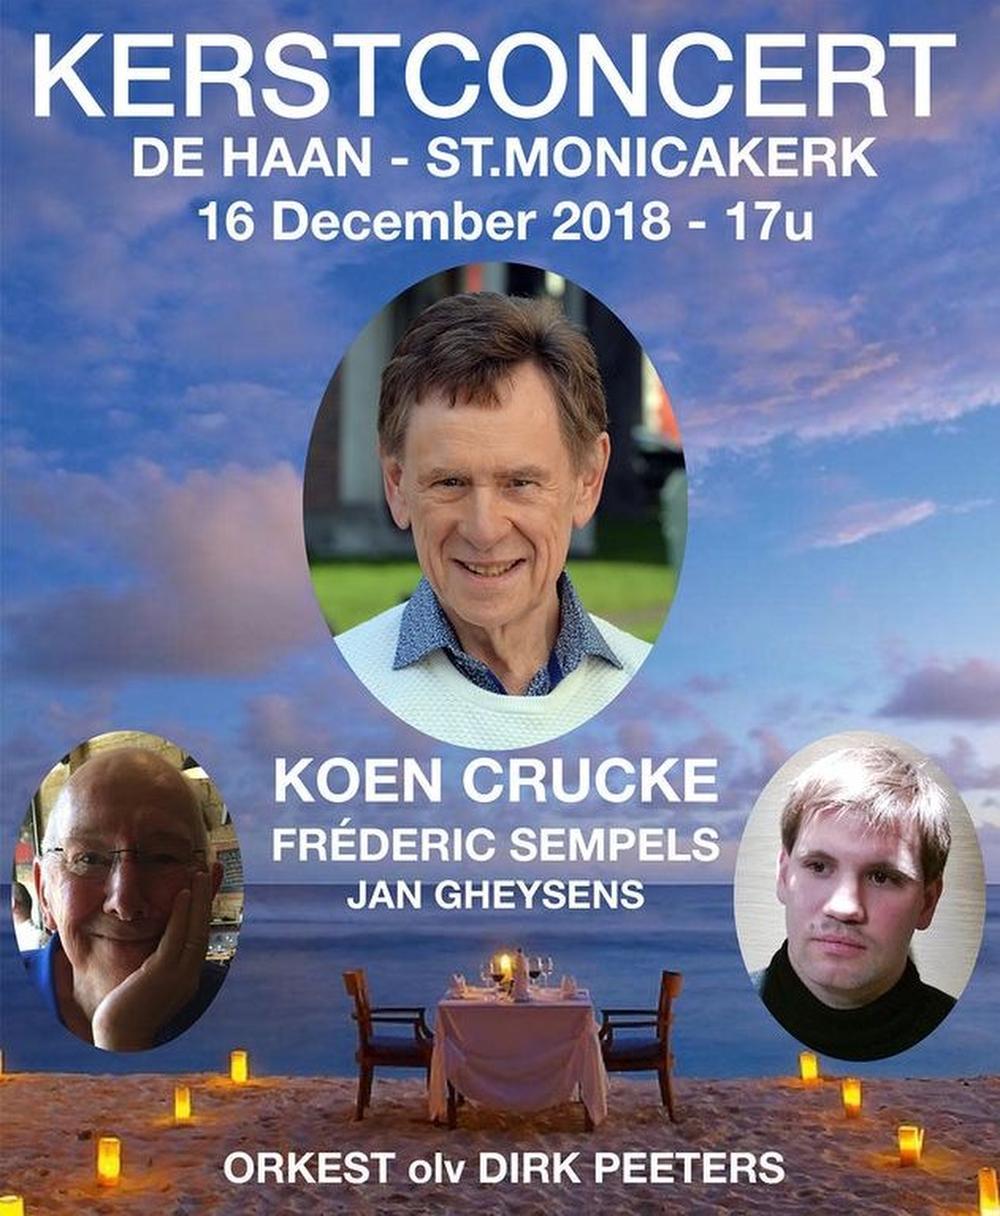 Kerst met Koen Crucke en Fréderic Sempels in Sint-Monicakerk in De Haan